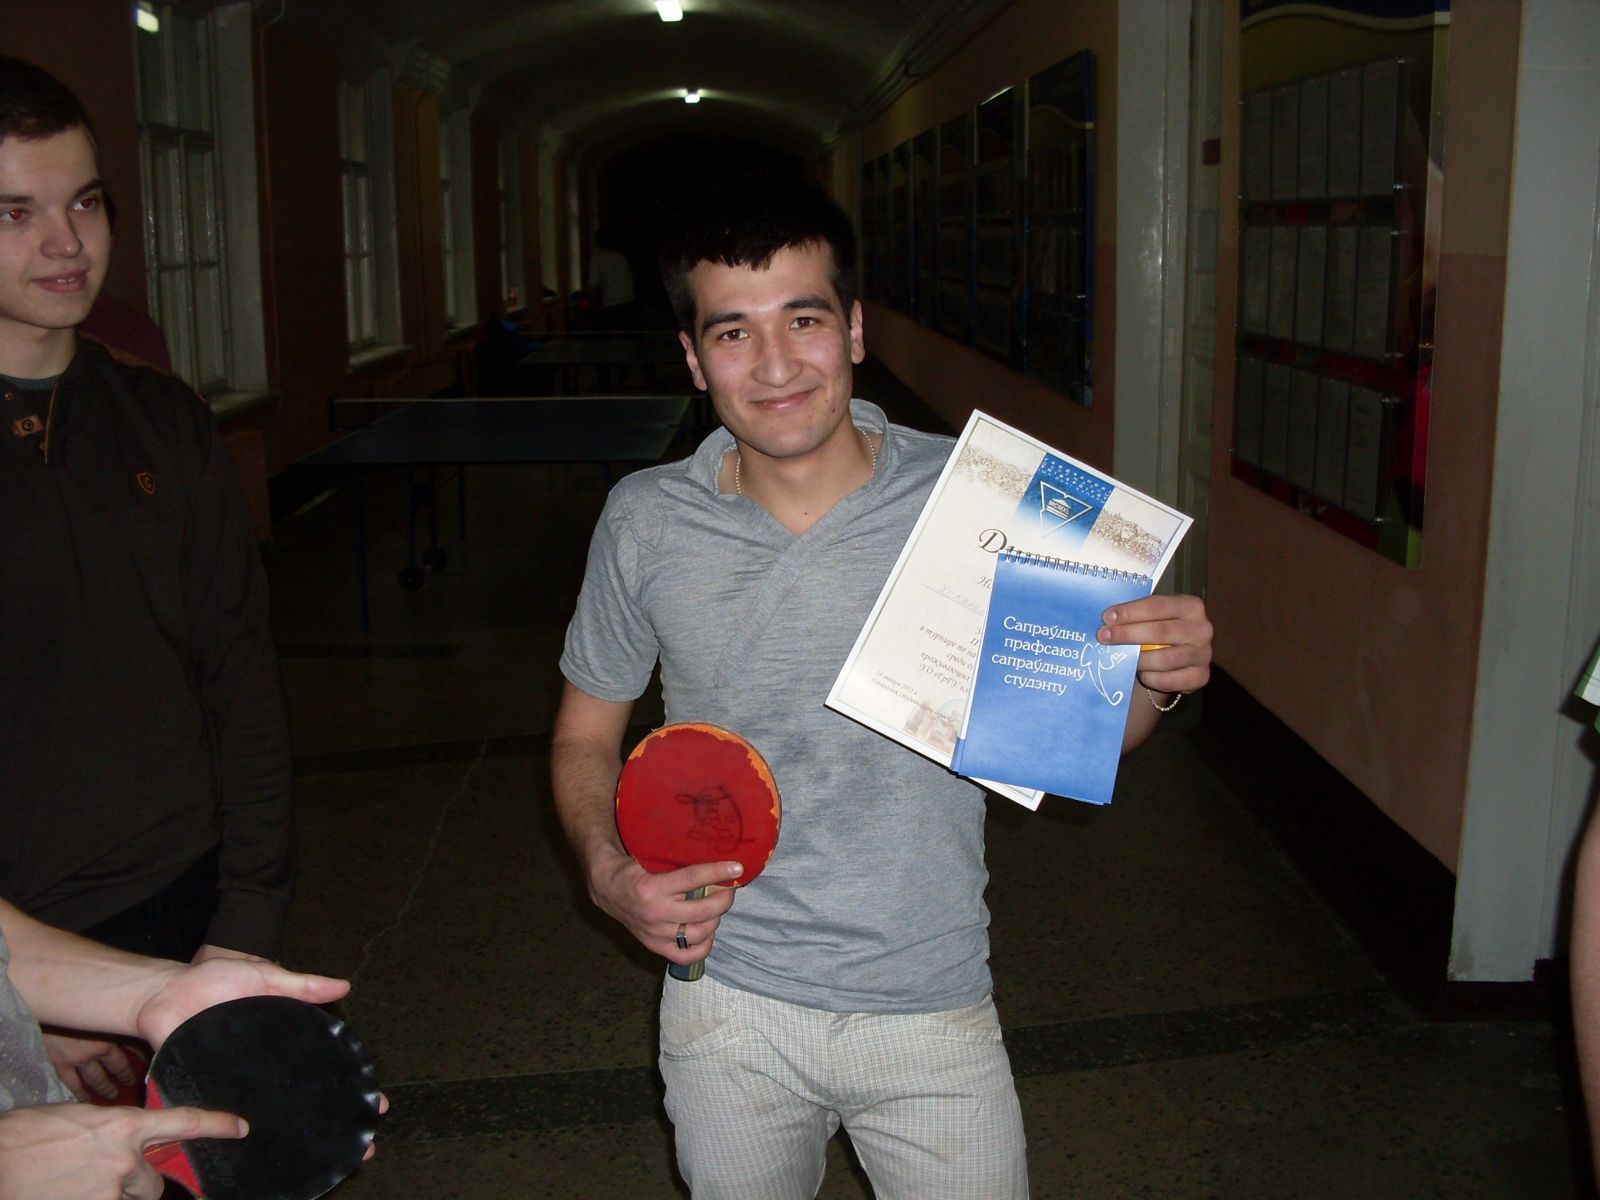 ГрГУ,университет, турнир по настольному теннису